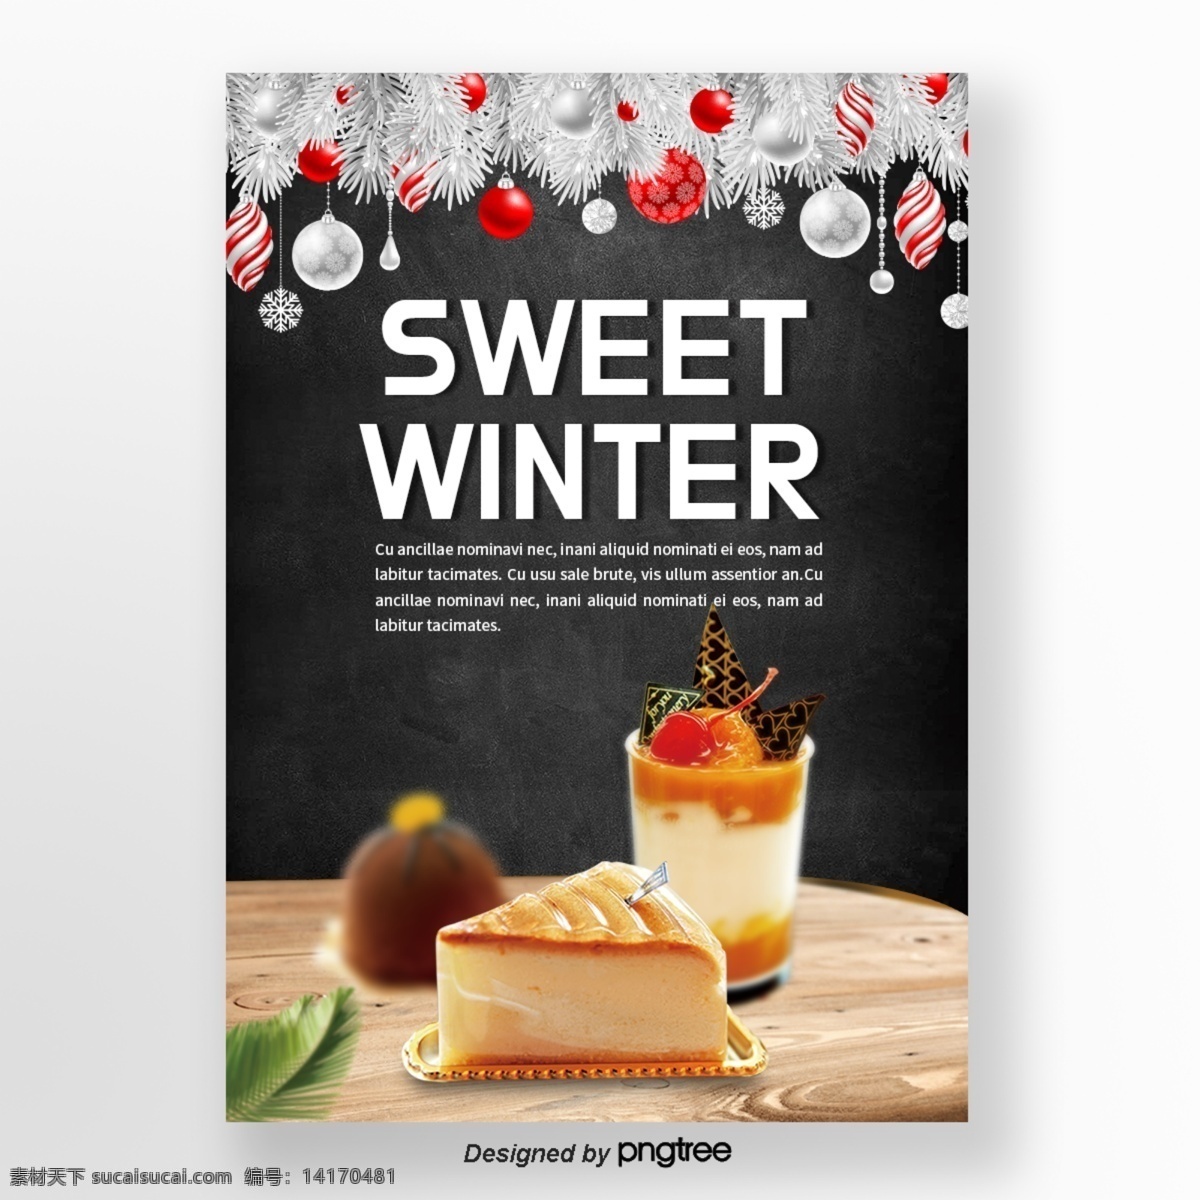 银色 红色 球 圣诞节 木版 叶子 蛋糕 甜味 食品 海报 n 冬天 公 冰激凌 叶